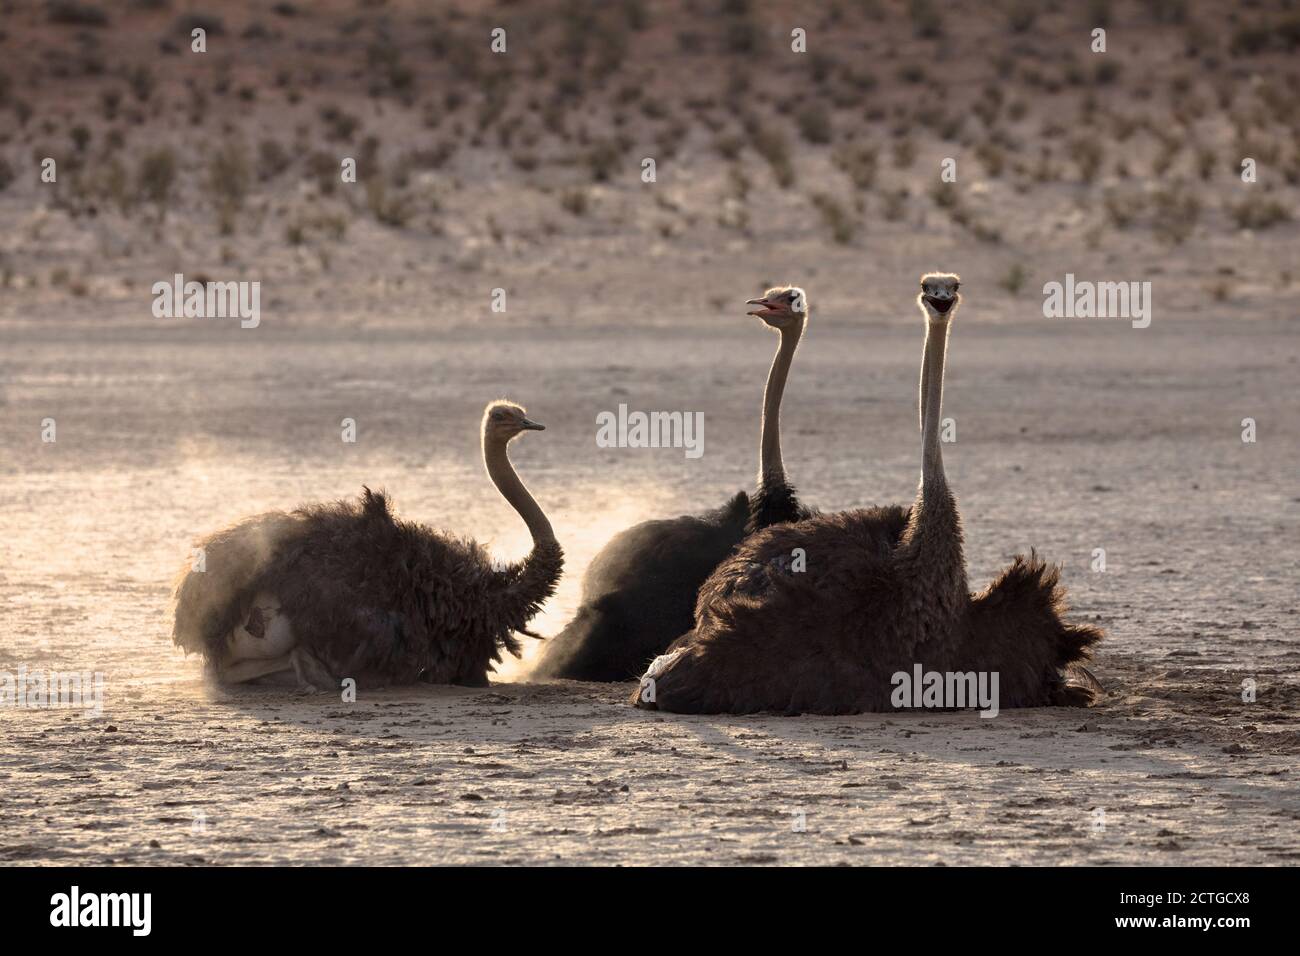 Strauß (Struthio camelus) Staubwedel, Kgalagadi transfrontier Park, Südafrika Stockfoto